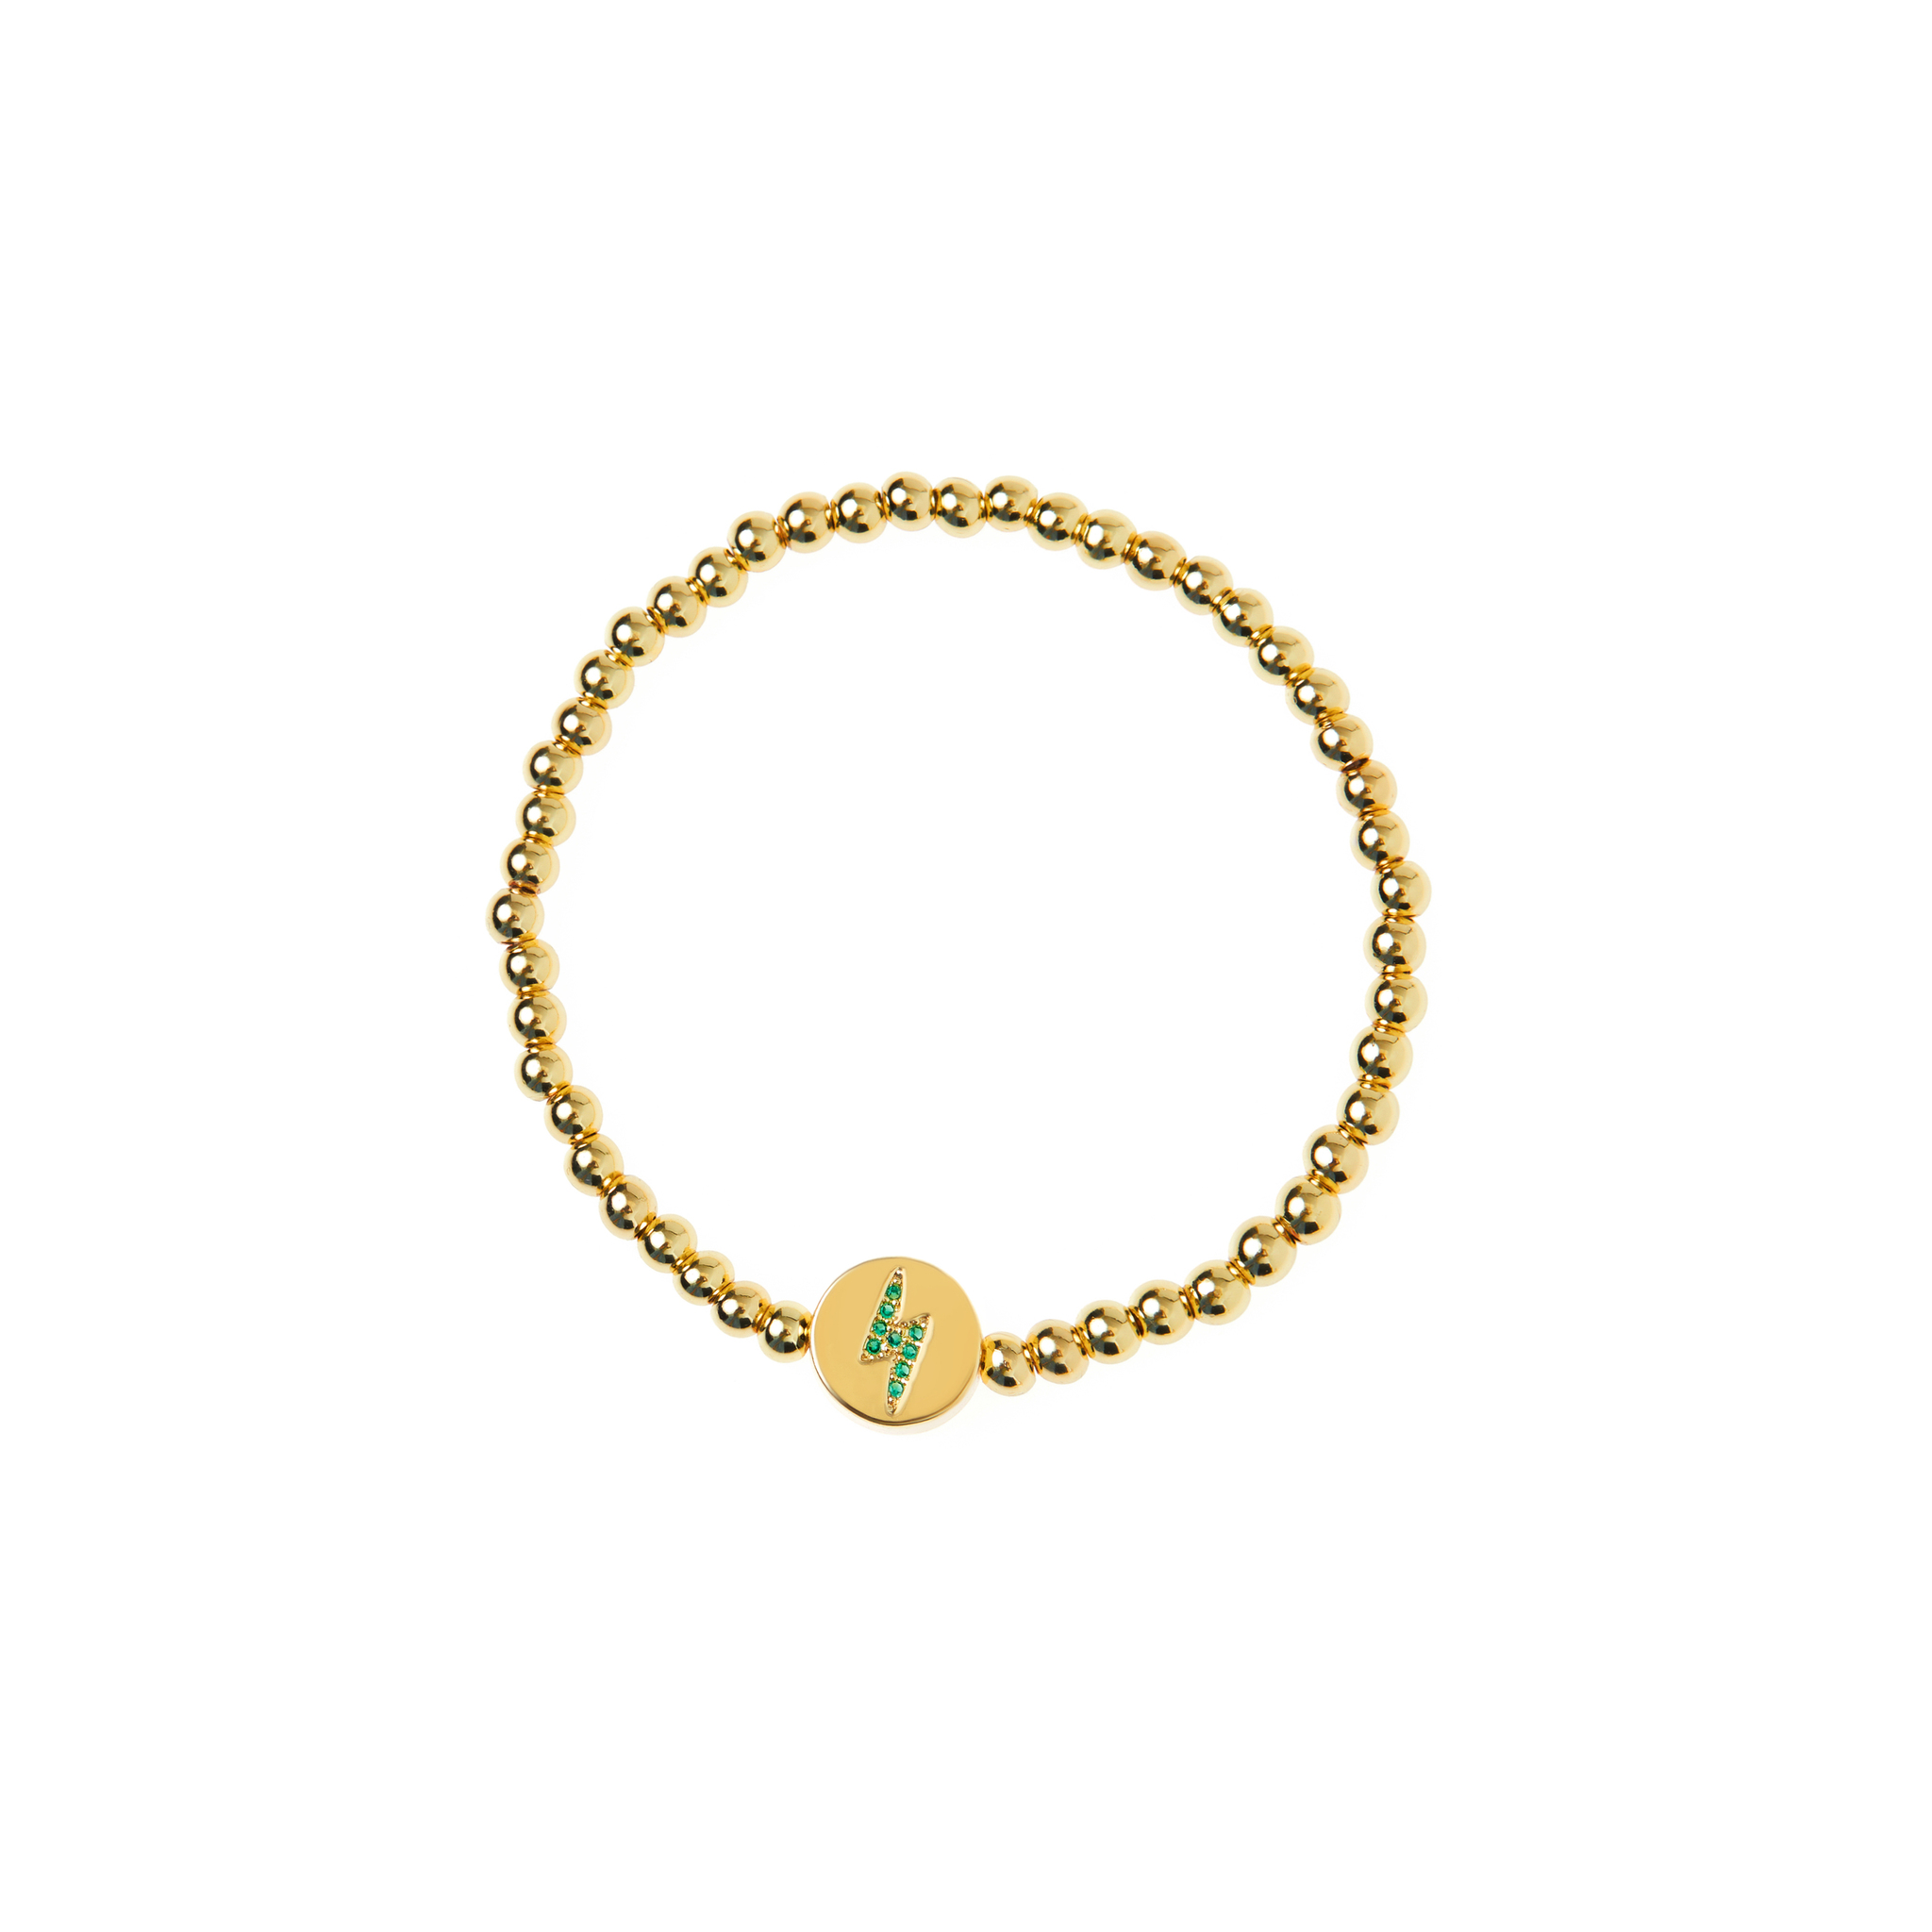 DÉJÀ VU Браслет Gold Lightning Crystal Bracelet - Green déjà vu браслет gold lightning crystal bracelet dark blue